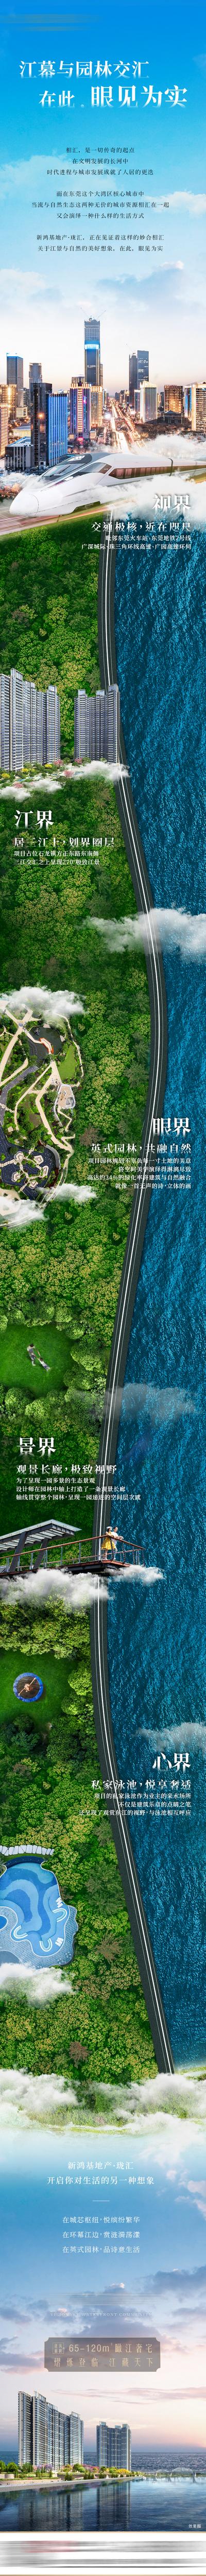 南门网 海报 长图 房地产 景观 配套 价值点 卖点 合成 海景 森林 城市 高铁